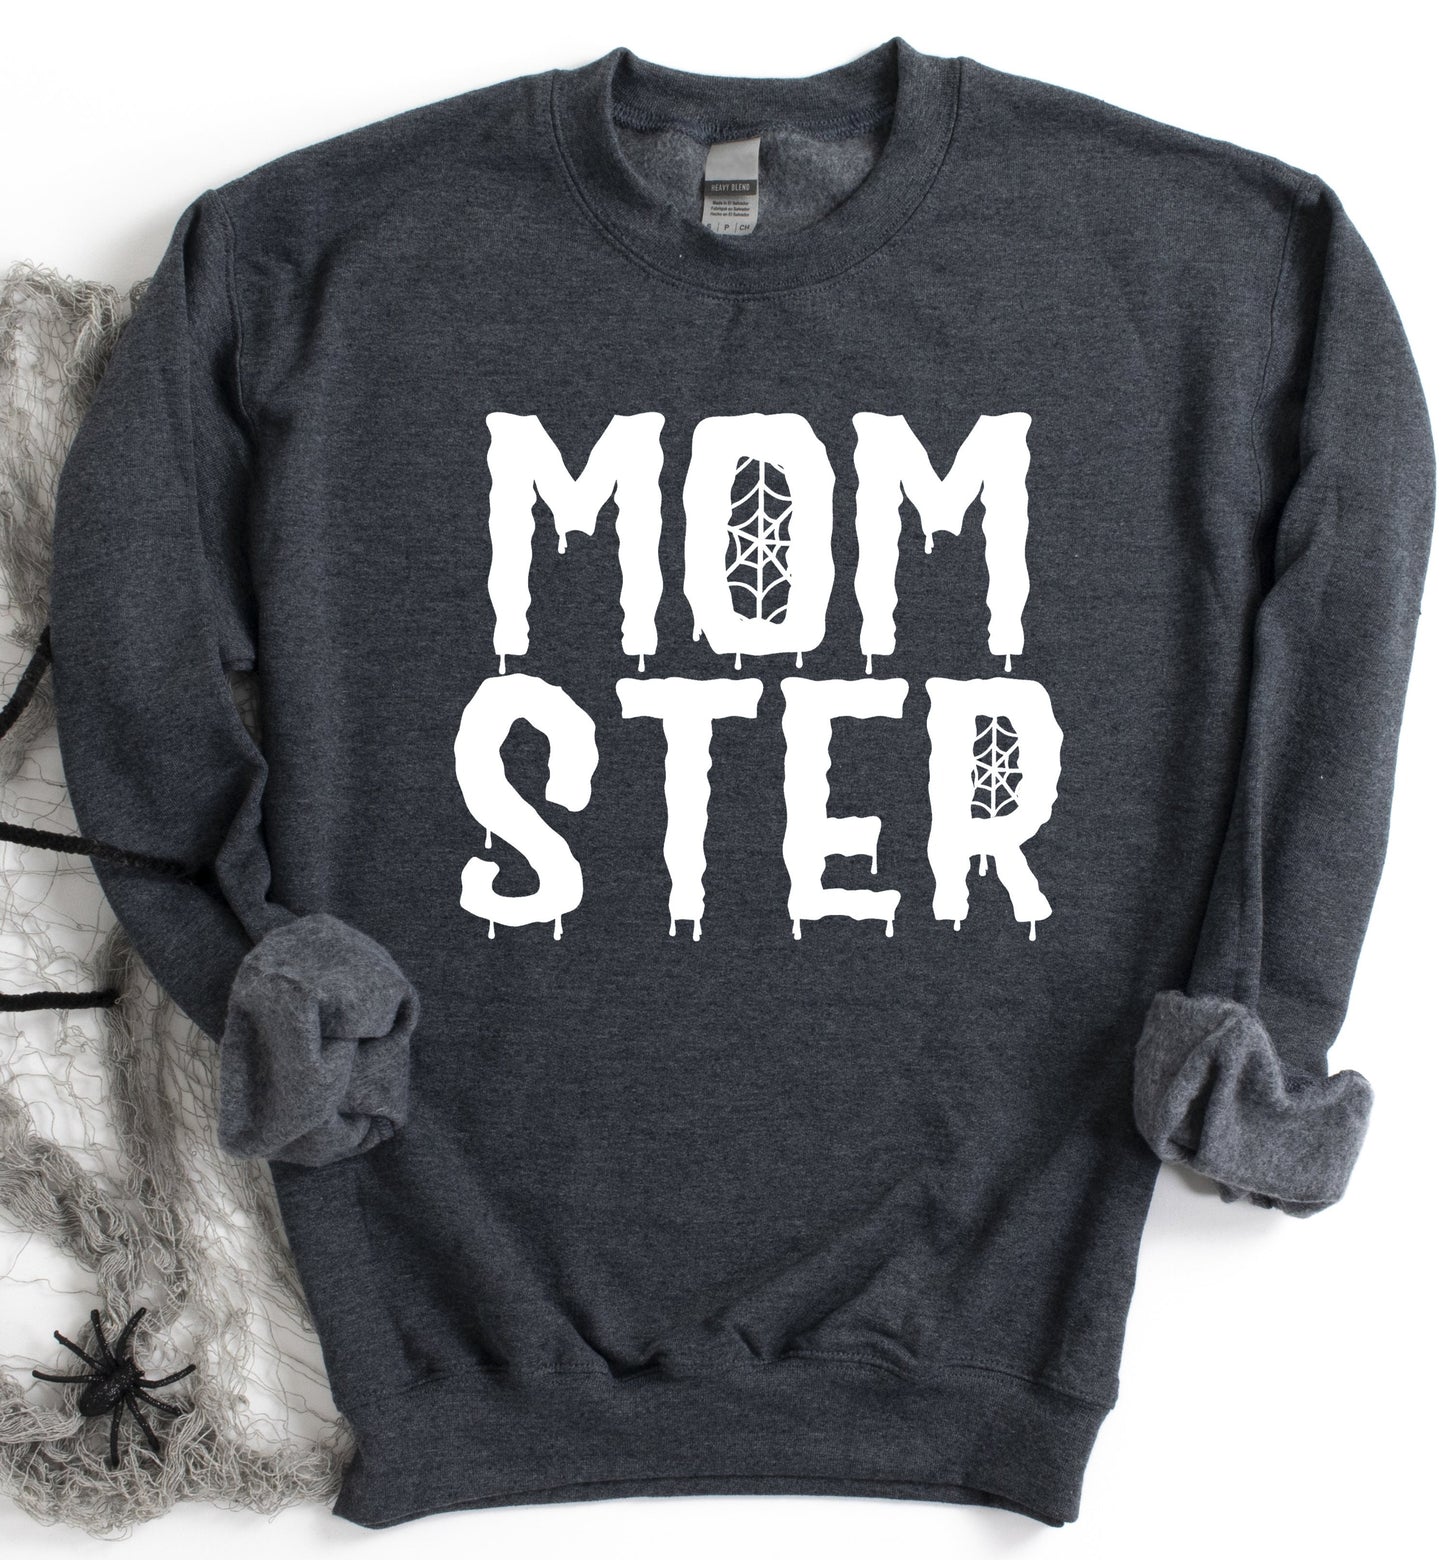 Momster Sweatshirt